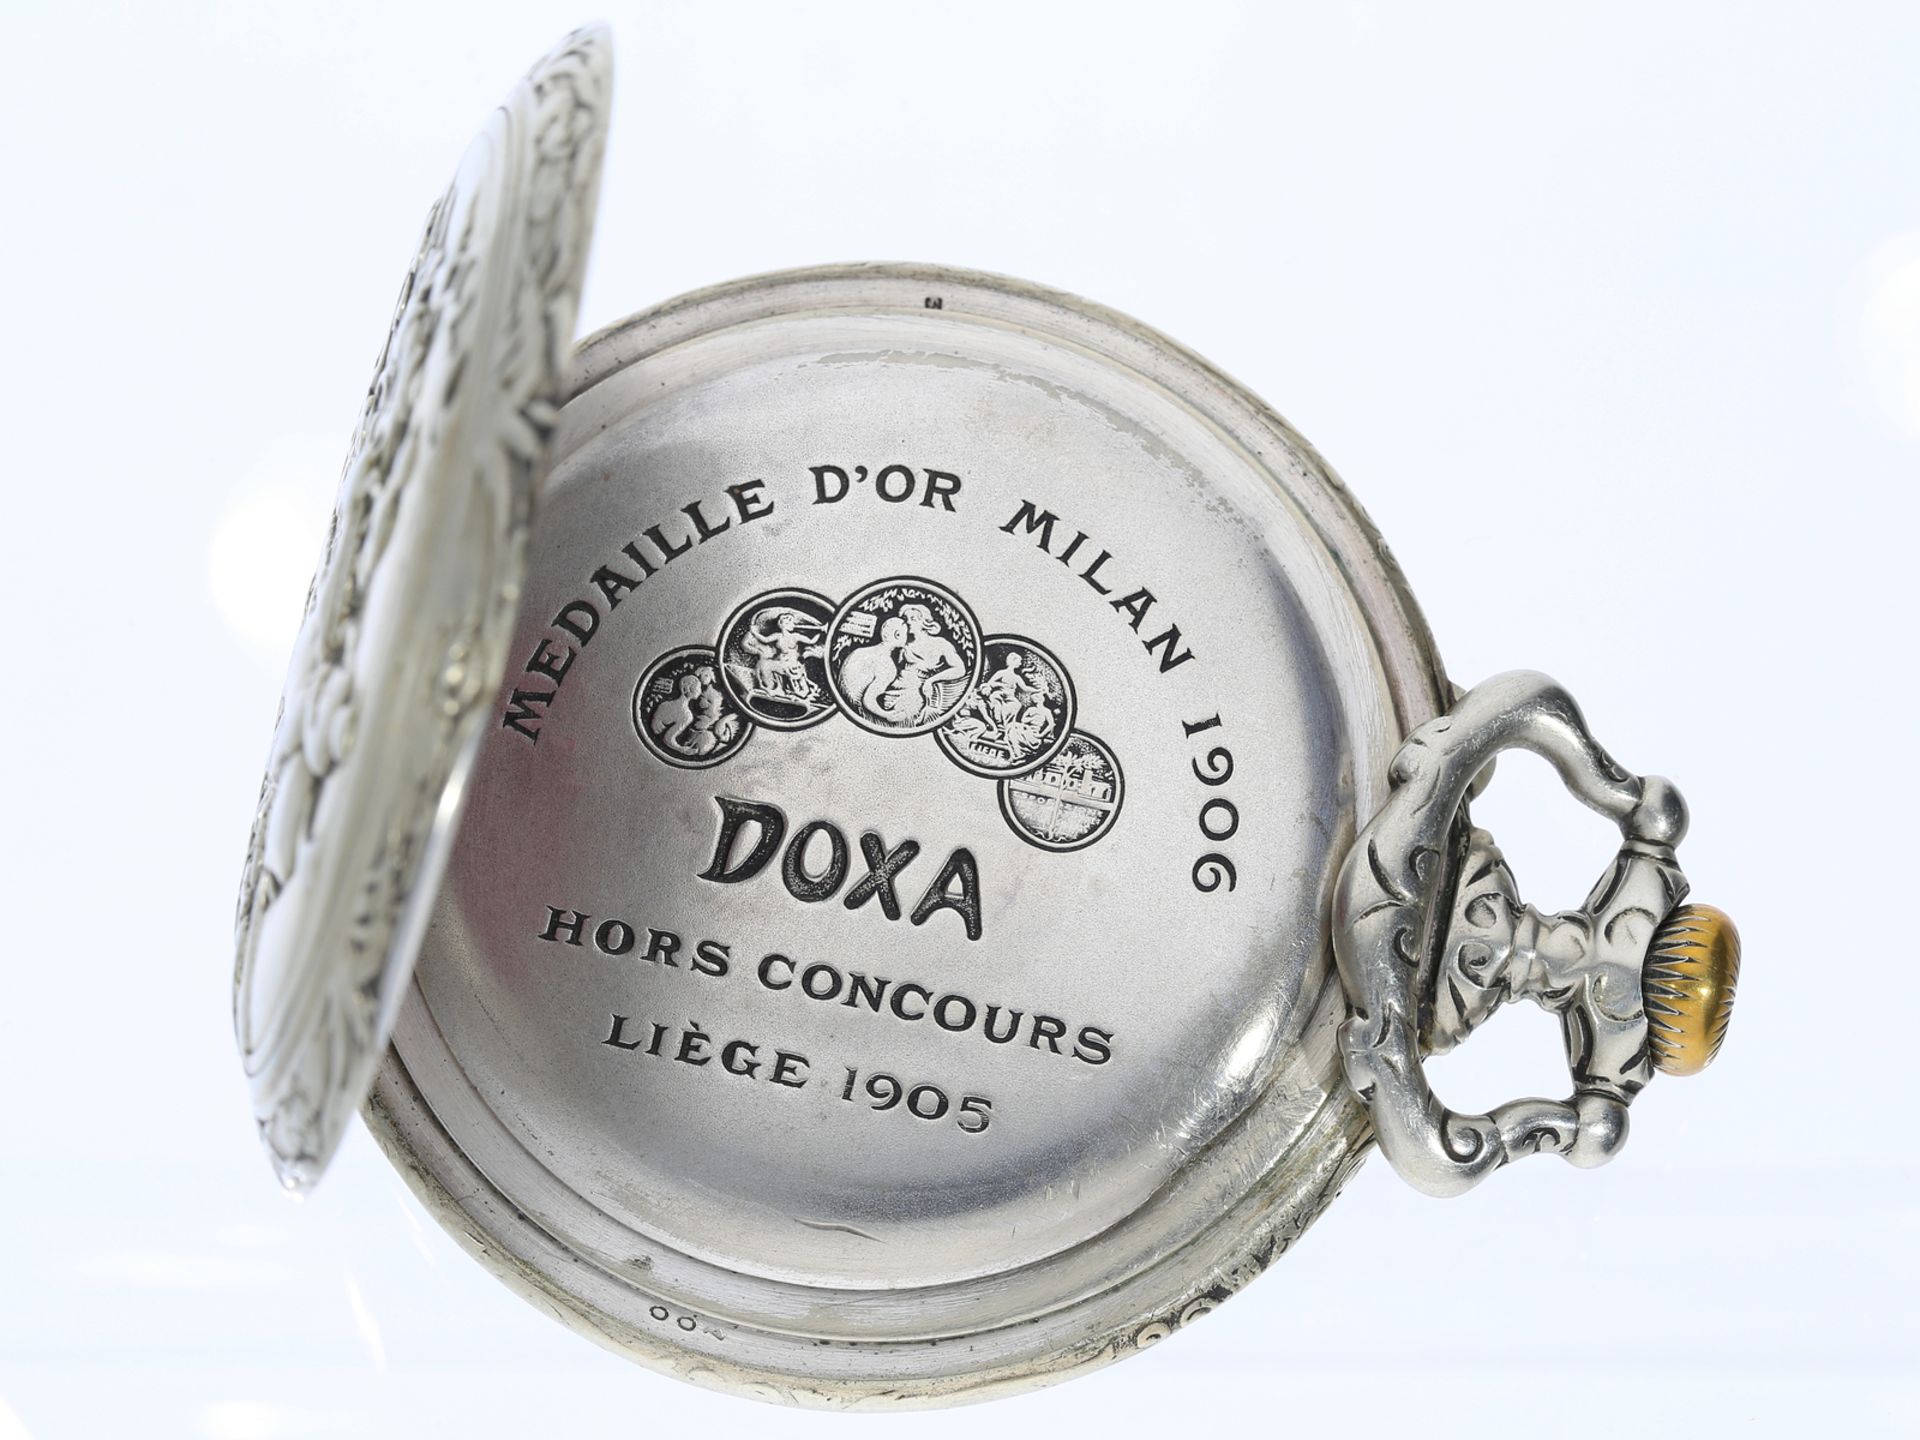 Taschenuhr: Doxa Goliath mit Reliefgehäuse, originaler Uhrenkette und Präsentationsbox, ca. 1910 - Bild 3 aus 6